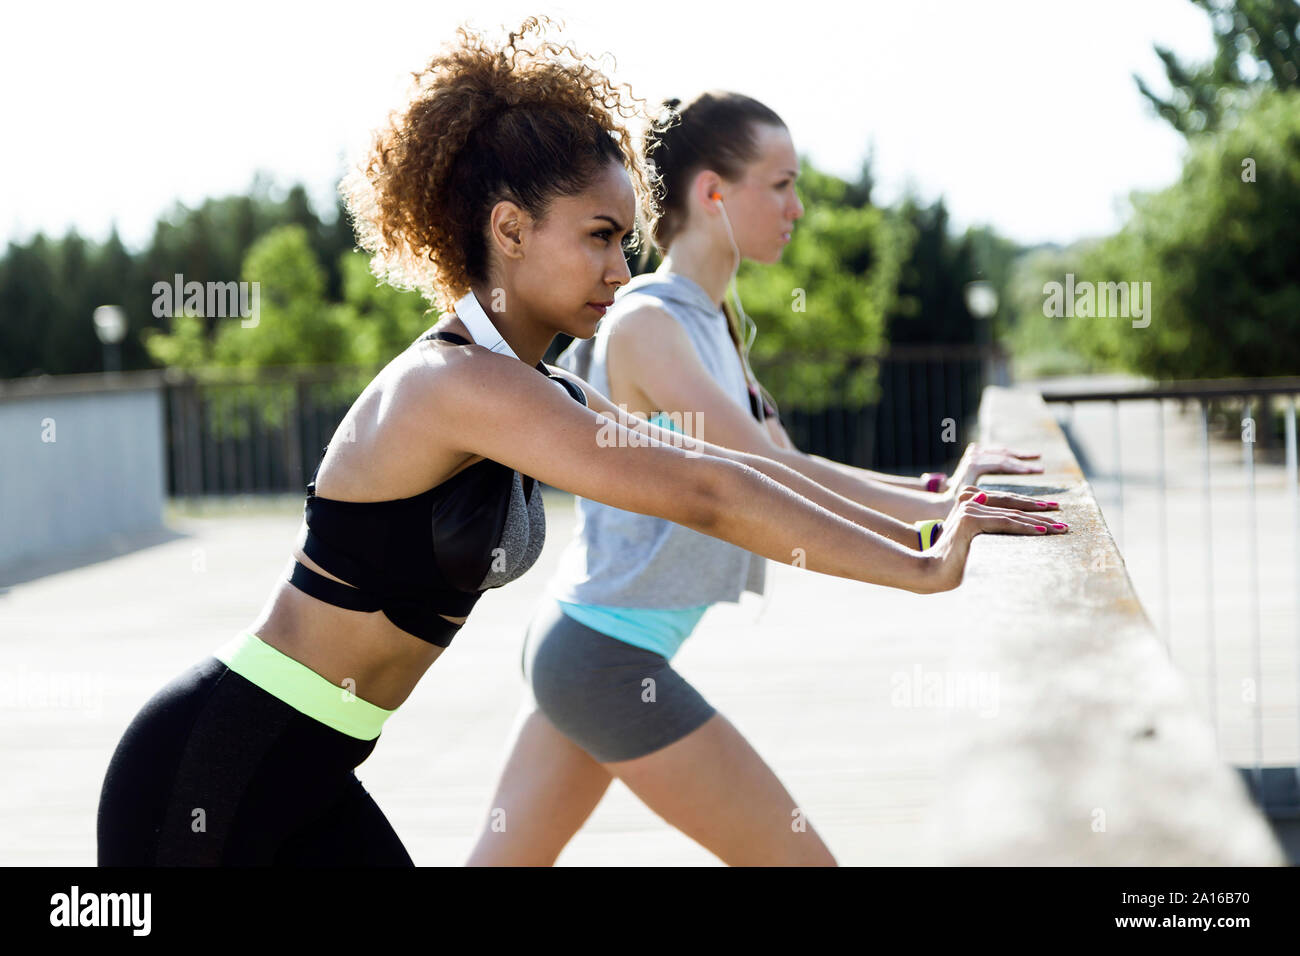 Zwei sportliche junge Frauen stretching auf Brücke Geländer Stockfoto